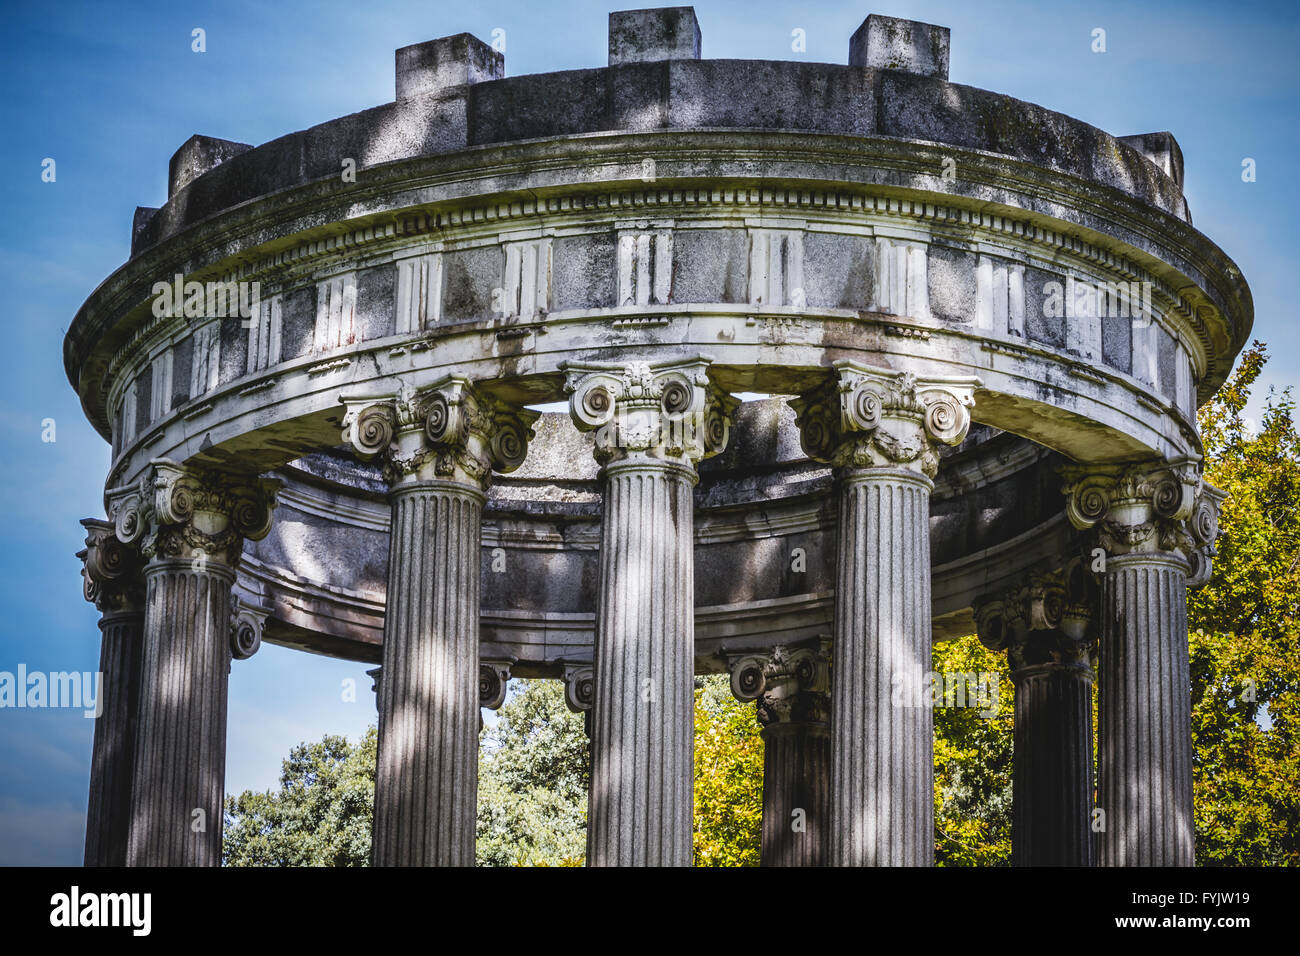 Tempel, Säulen im griechischen Stil, korinthischen Kapitellen in einem park Stockfoto